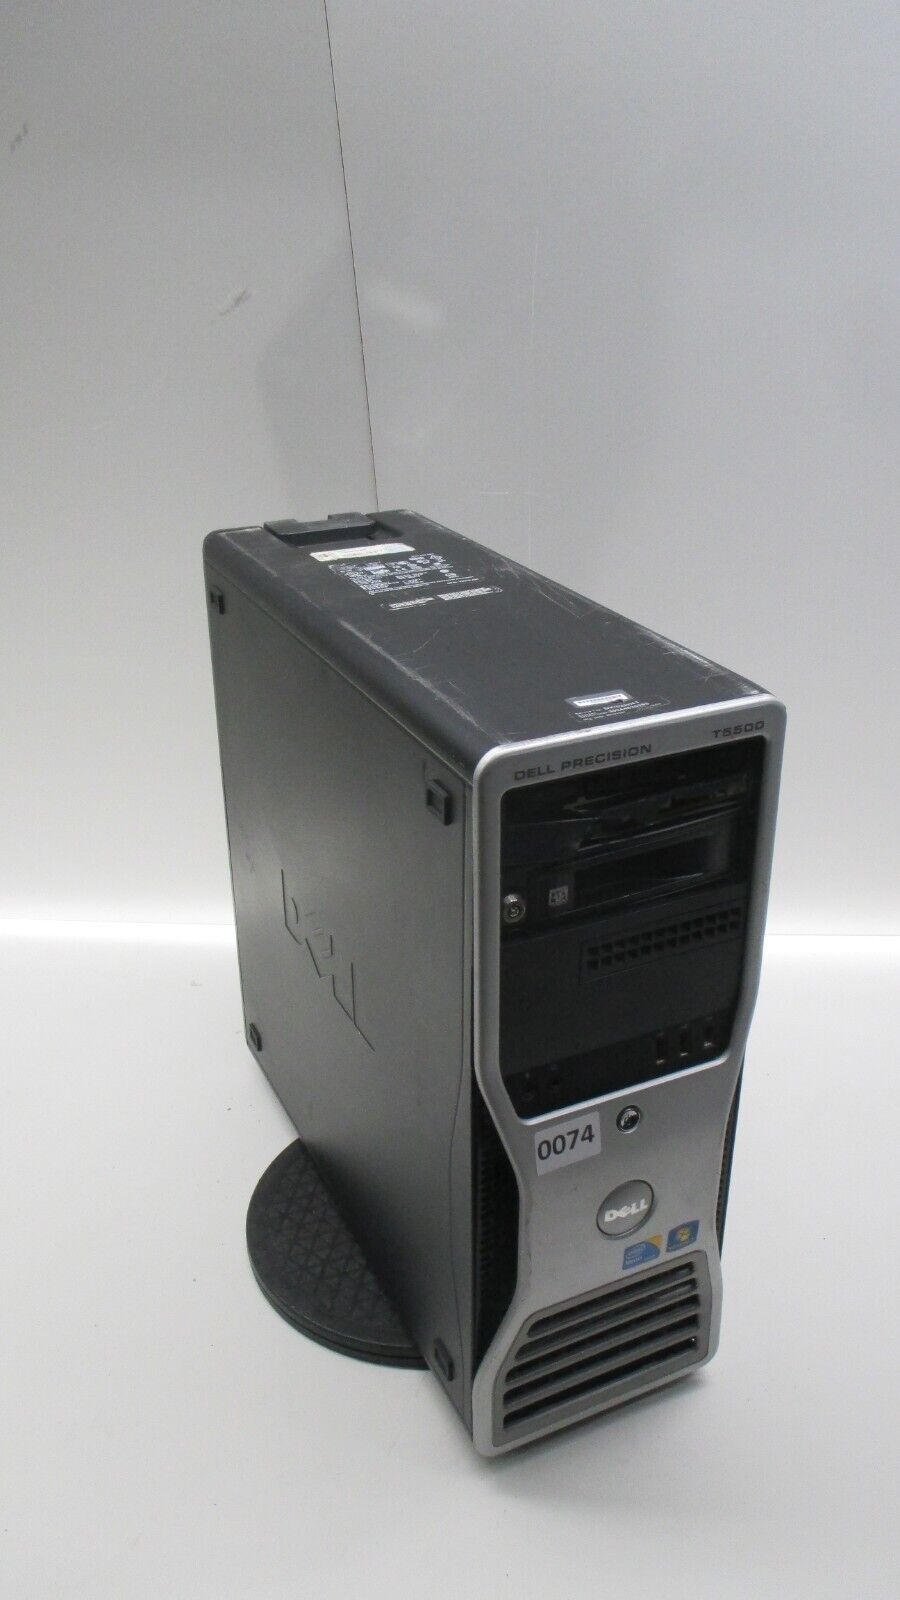 Dell Precision T5500 Workstation Intel Xeon E5645 4GB Ram No HDD Quadro 4000